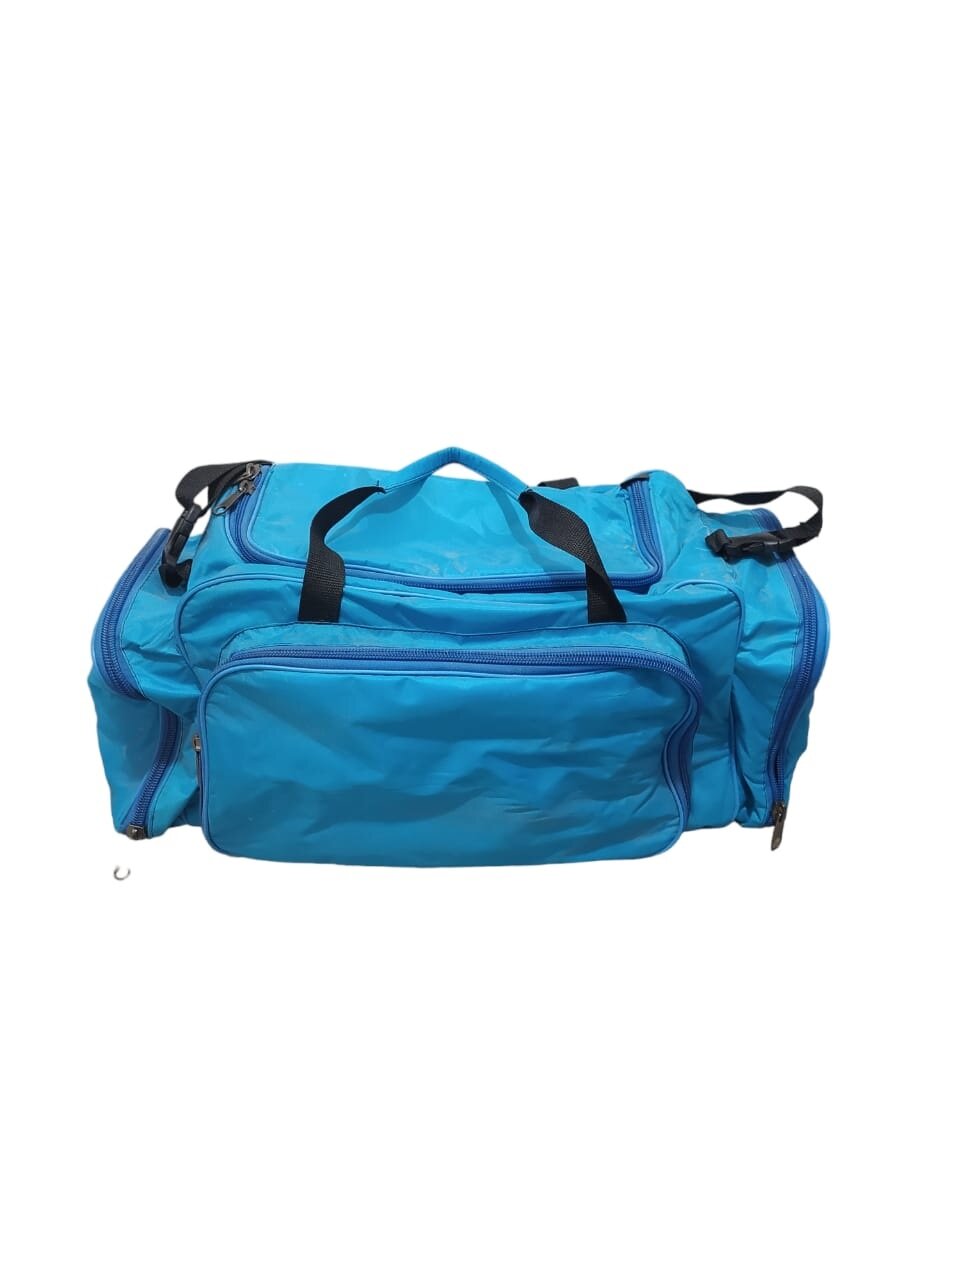 Туристическая походная сумка-пикник SN на 4 персоны со встроенной термо сумкой на 20 л и посудой цвет синий